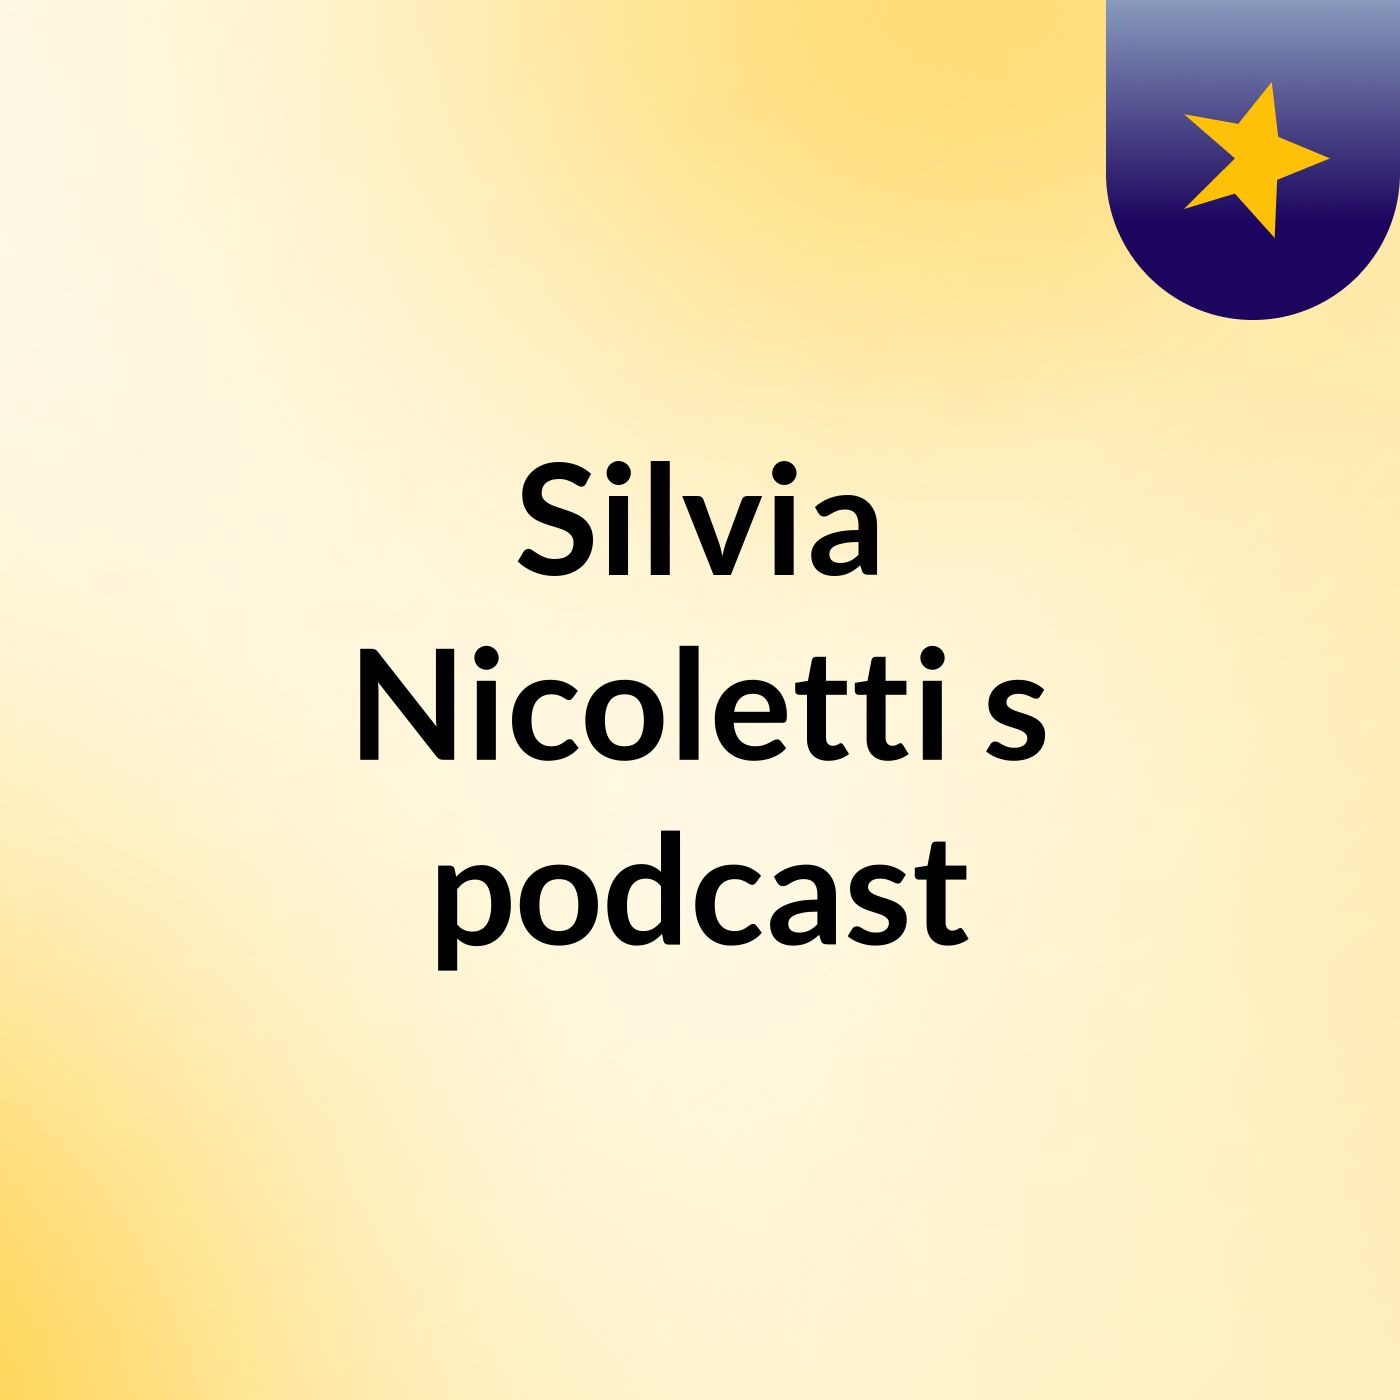 Silvia Nicoletti's podcast